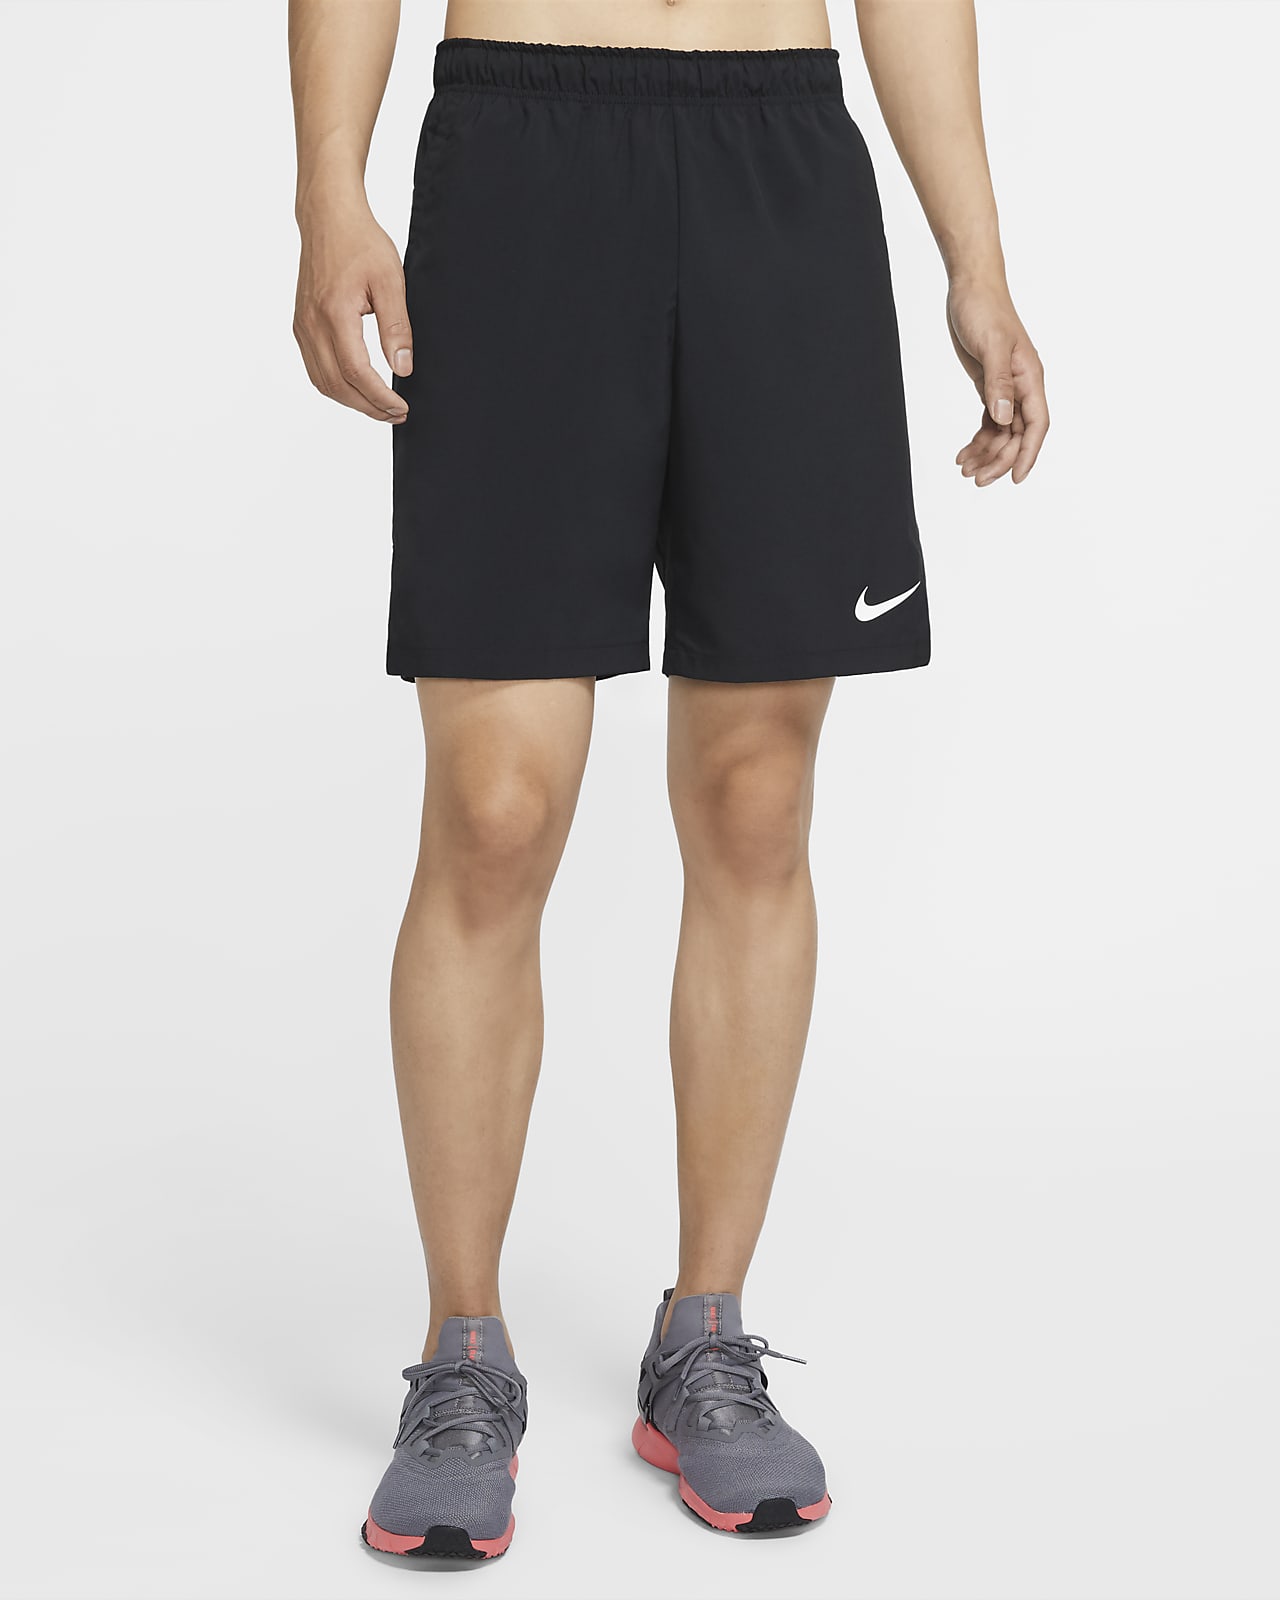 いライフス ナイキ Nike ショートパンツ メンズ フレックス ハイブリッド ショートパンツ 大きいサイズ Usa直輸入 あす楽対応 ゴルフウェアusa さりげなく